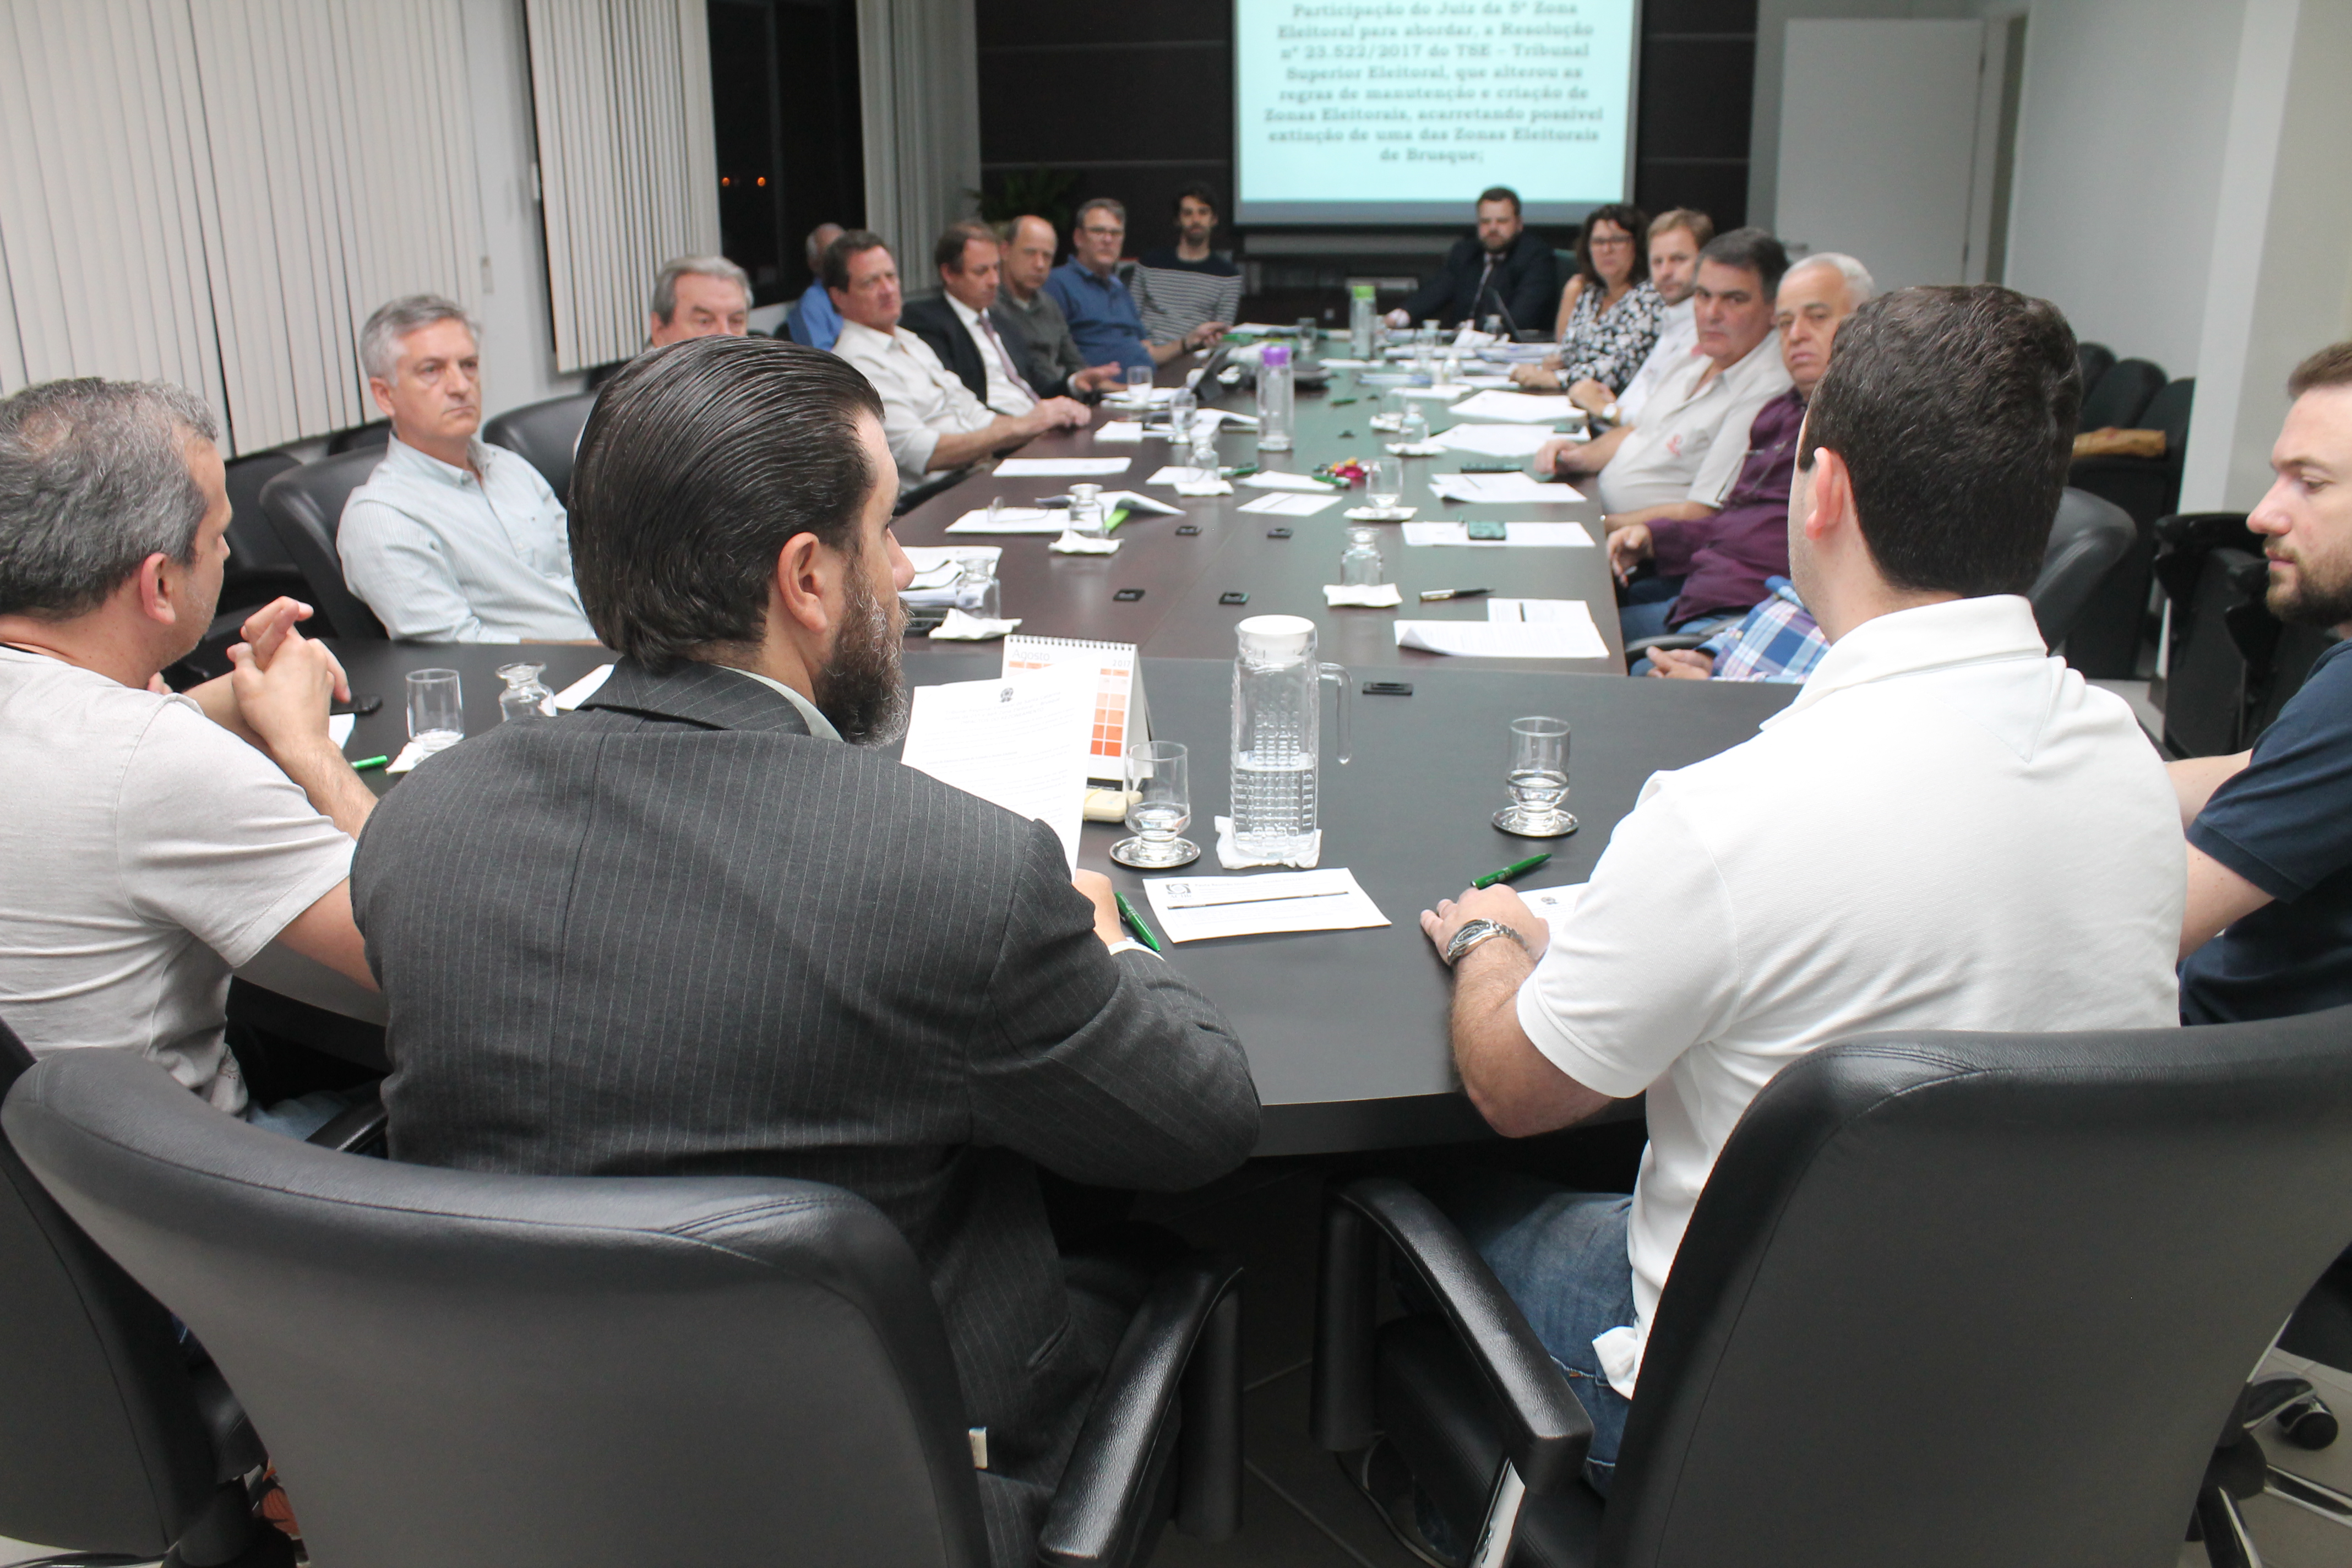 OAB Brusque participa de reunião da ACIBr sobre zonas eleitorais de Brusque